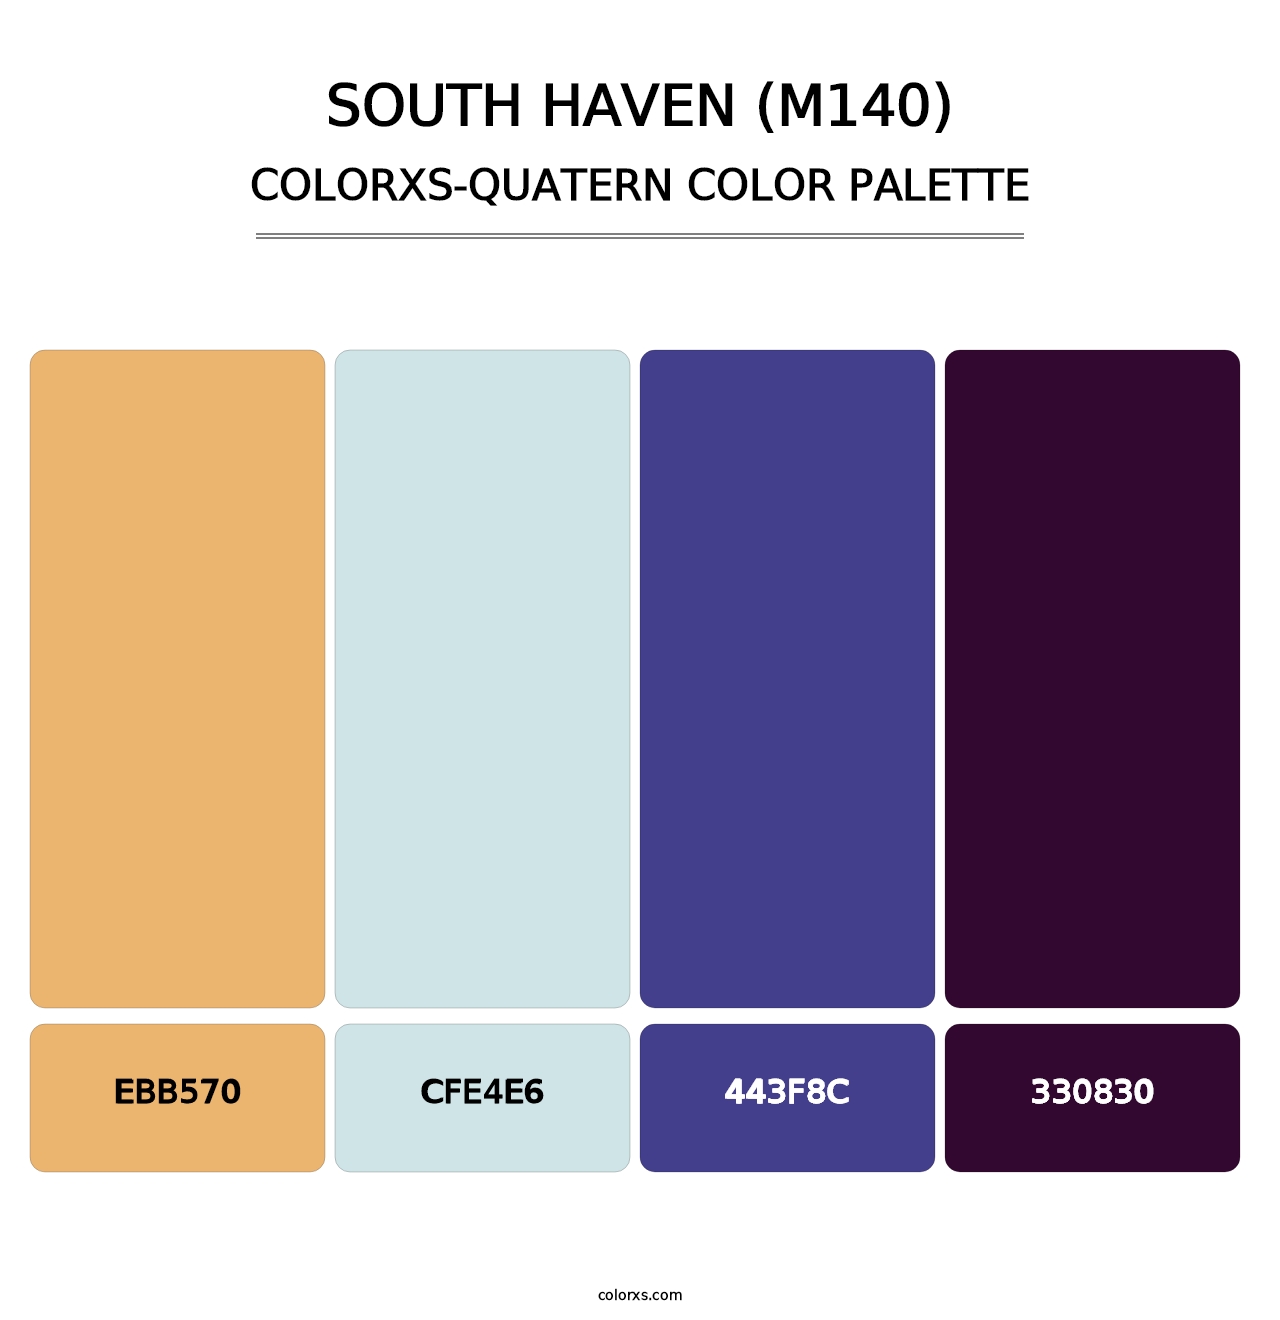 South Haven (M140) - Colorxs Quatern Palette